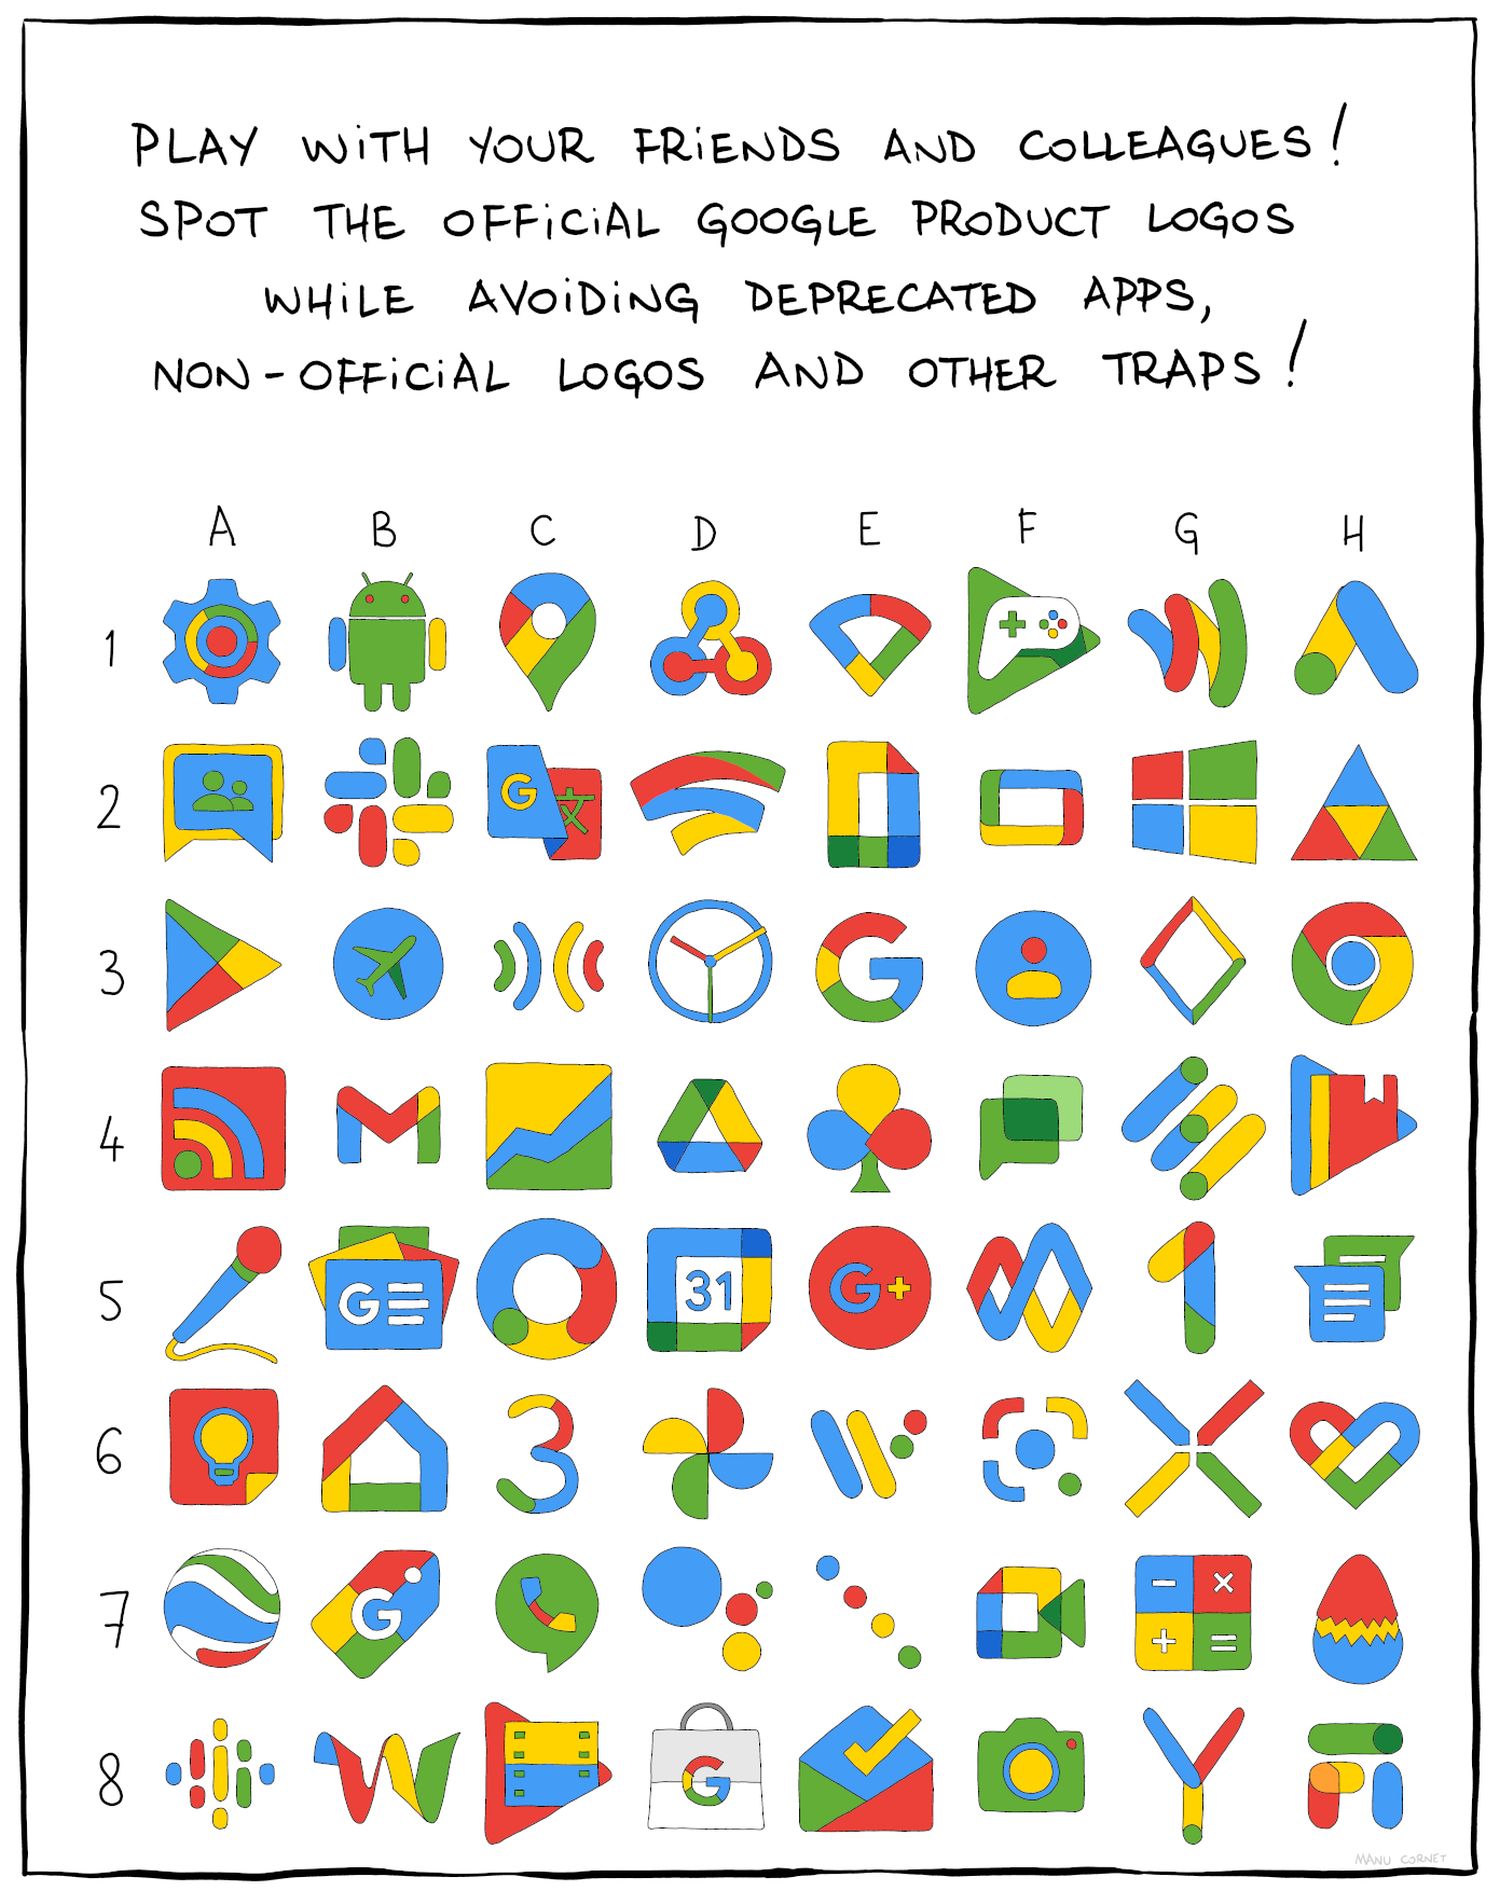 goomics board game google logos